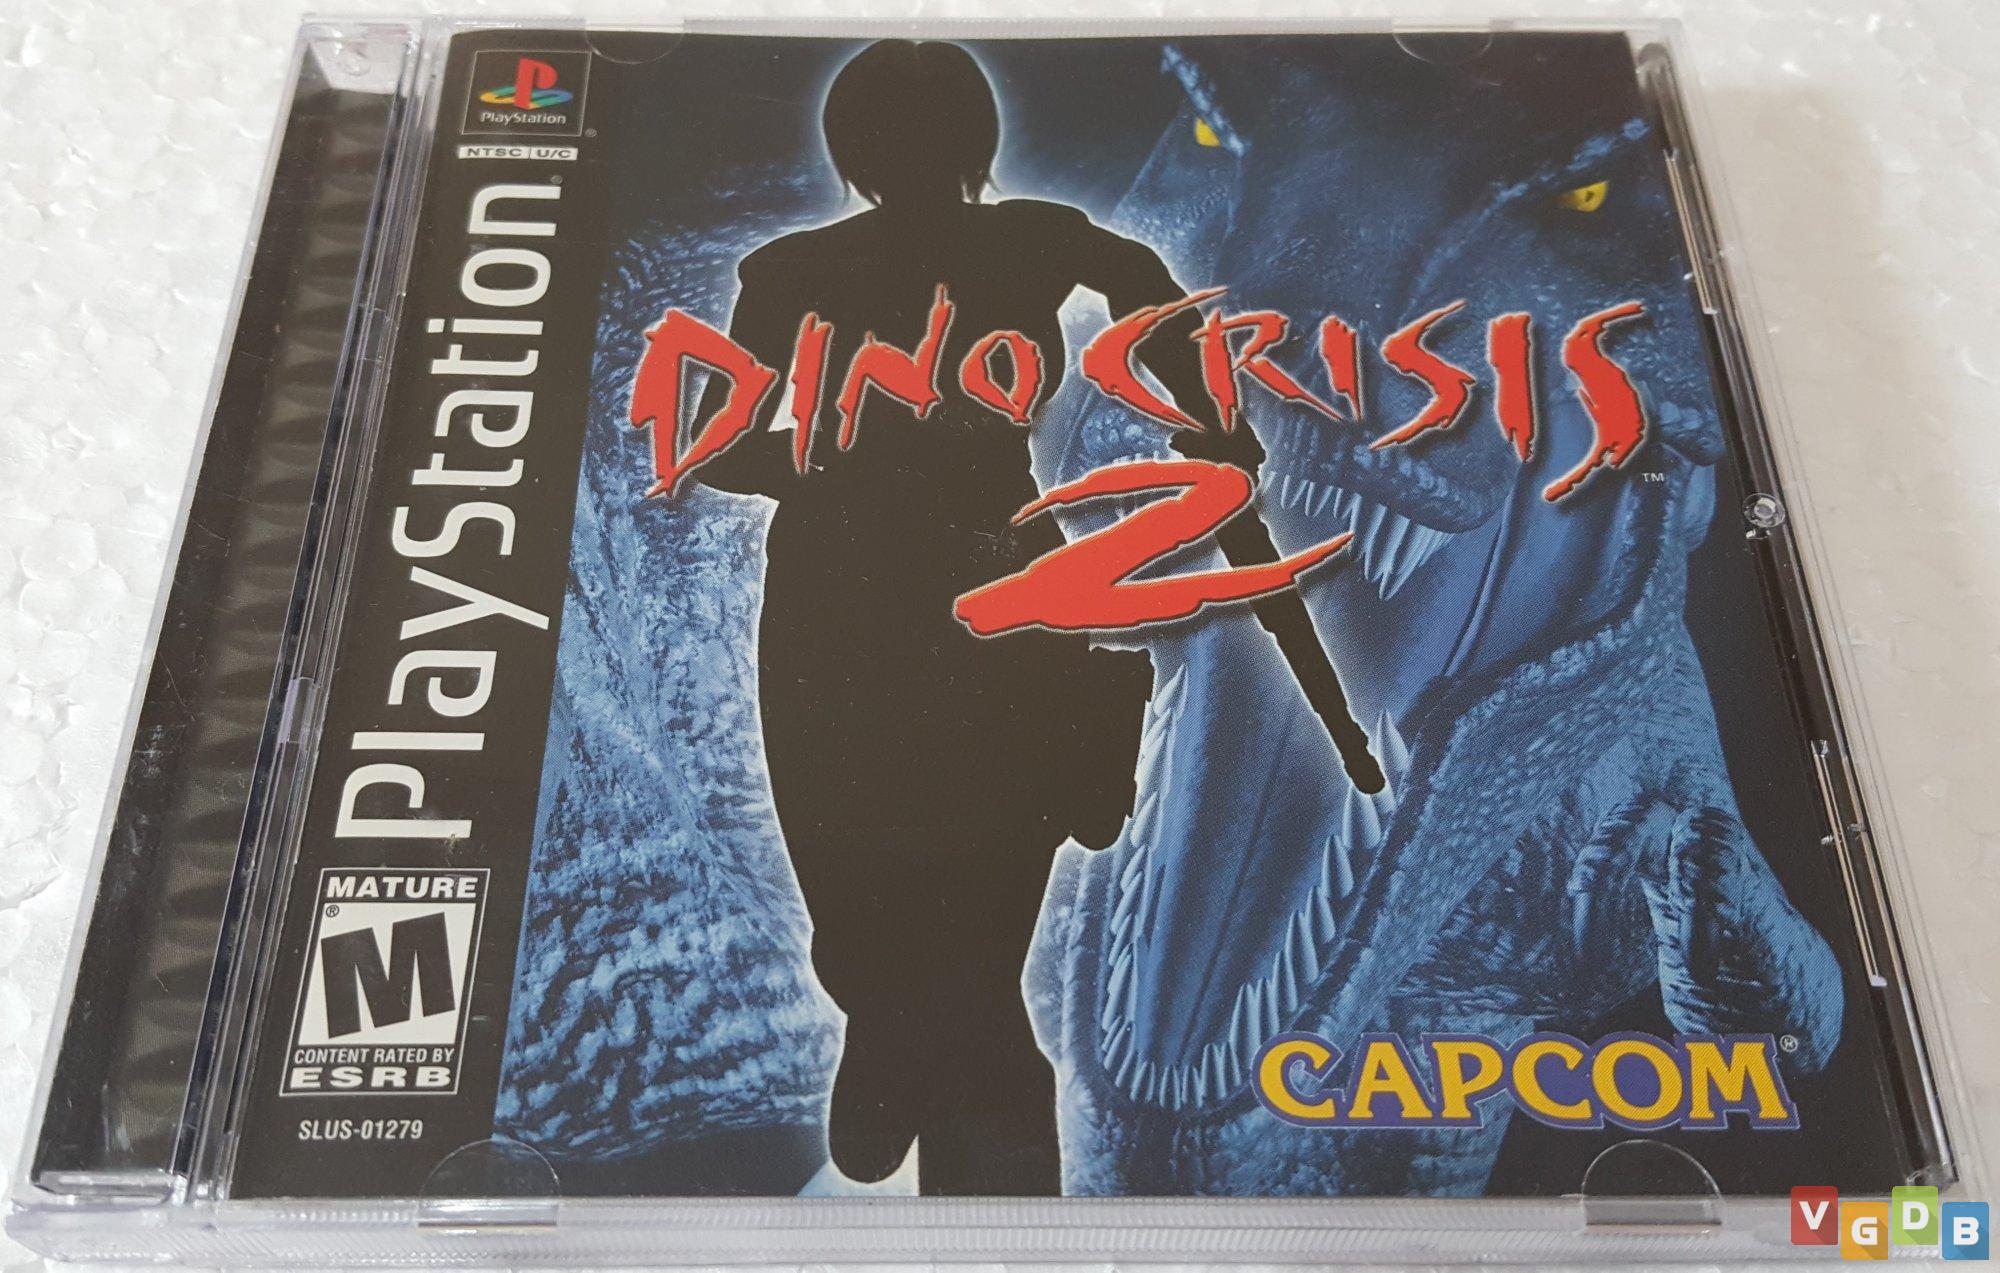 PS1] Dino Crisis 2 (Dublado PT-BR) - Seganet - Retro Games - Fórum SegaNet